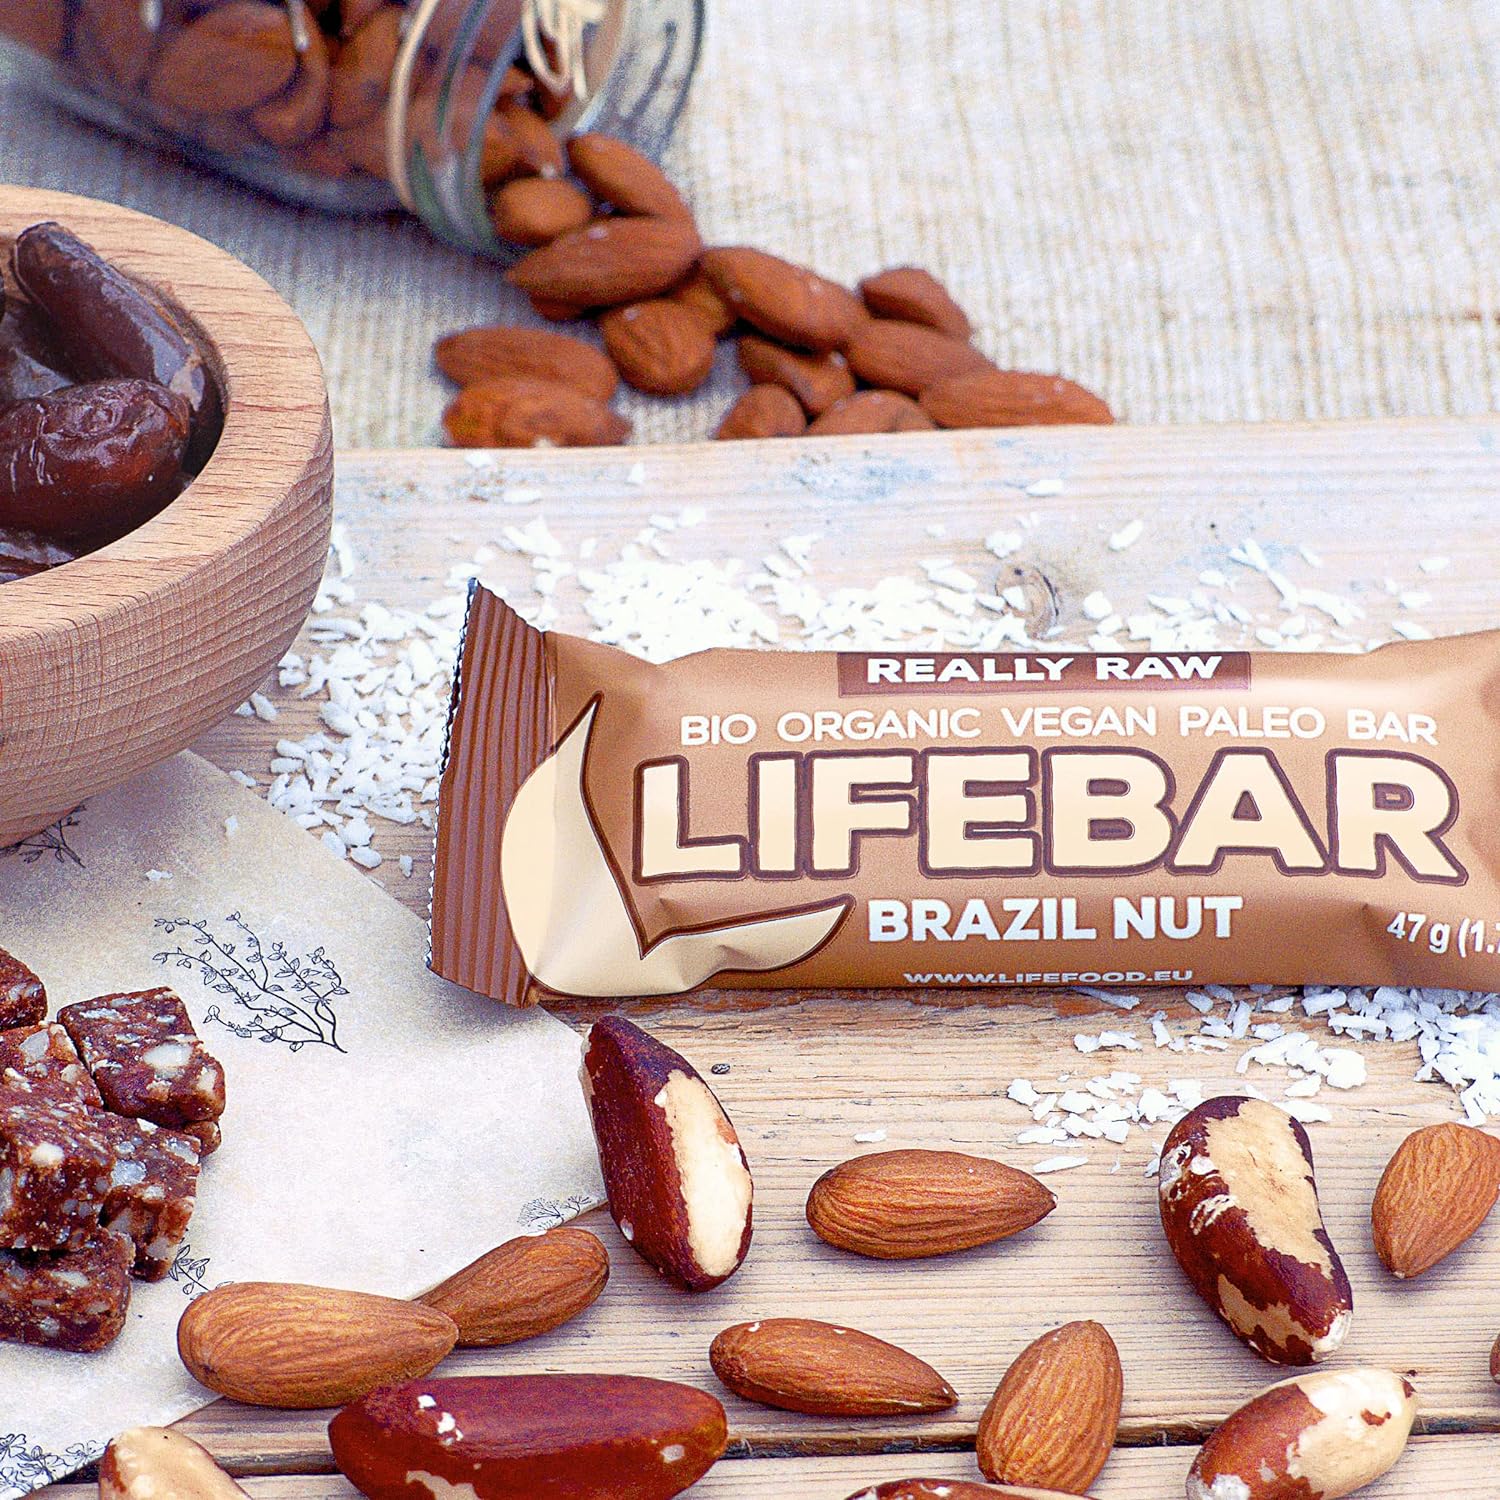 Батончик Lifefood Lifebar енергетичний з бразильським горіхом органічний 47 г - фото 6